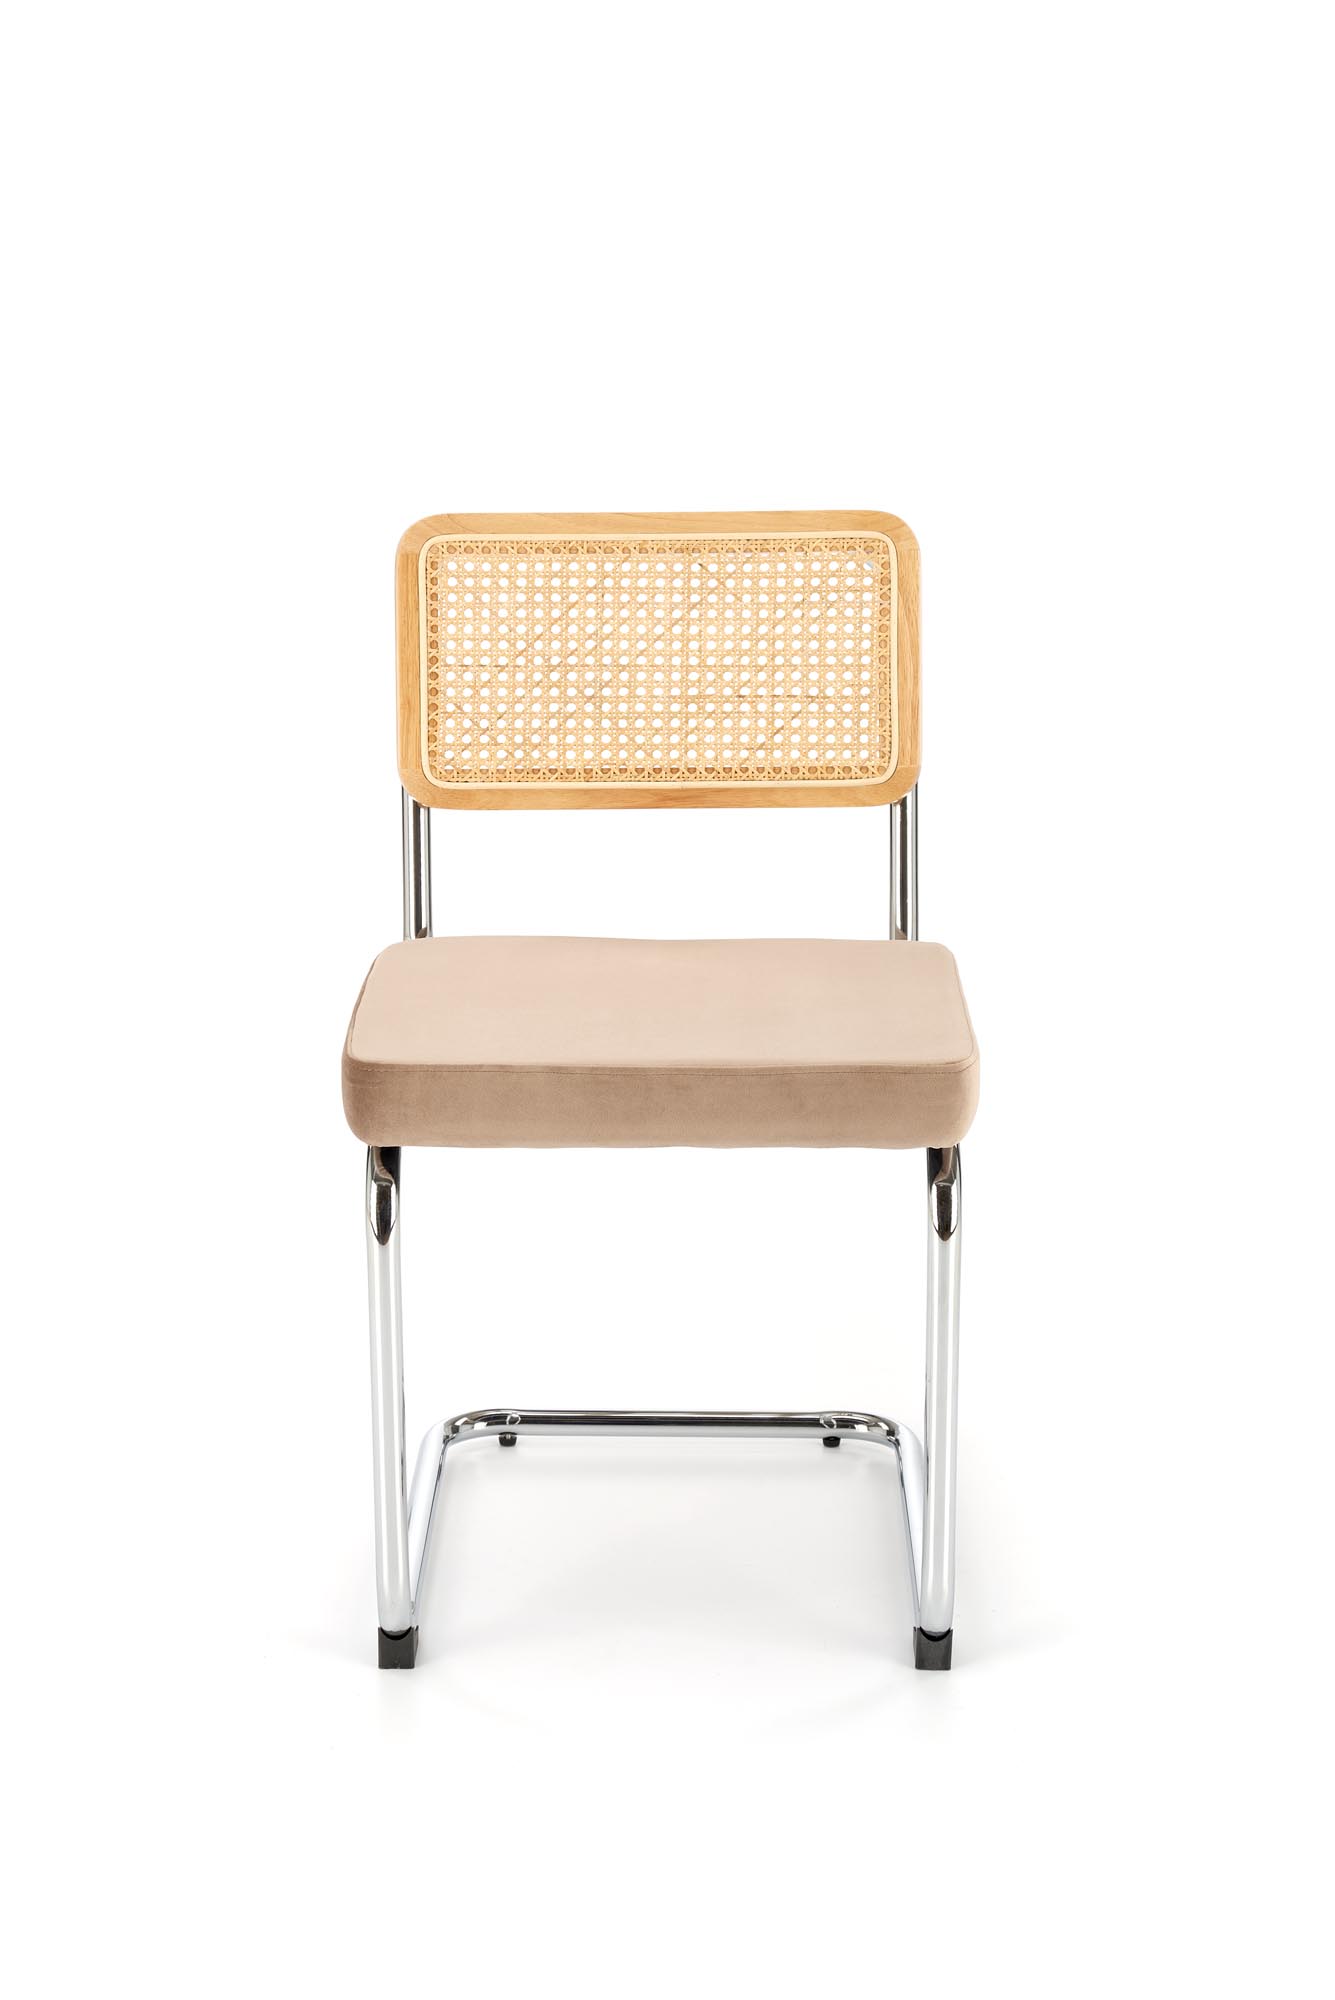 K504 Židle béžový / přírodní židle ocelové s čalouněným sedákem k504 - béžový / přírodní